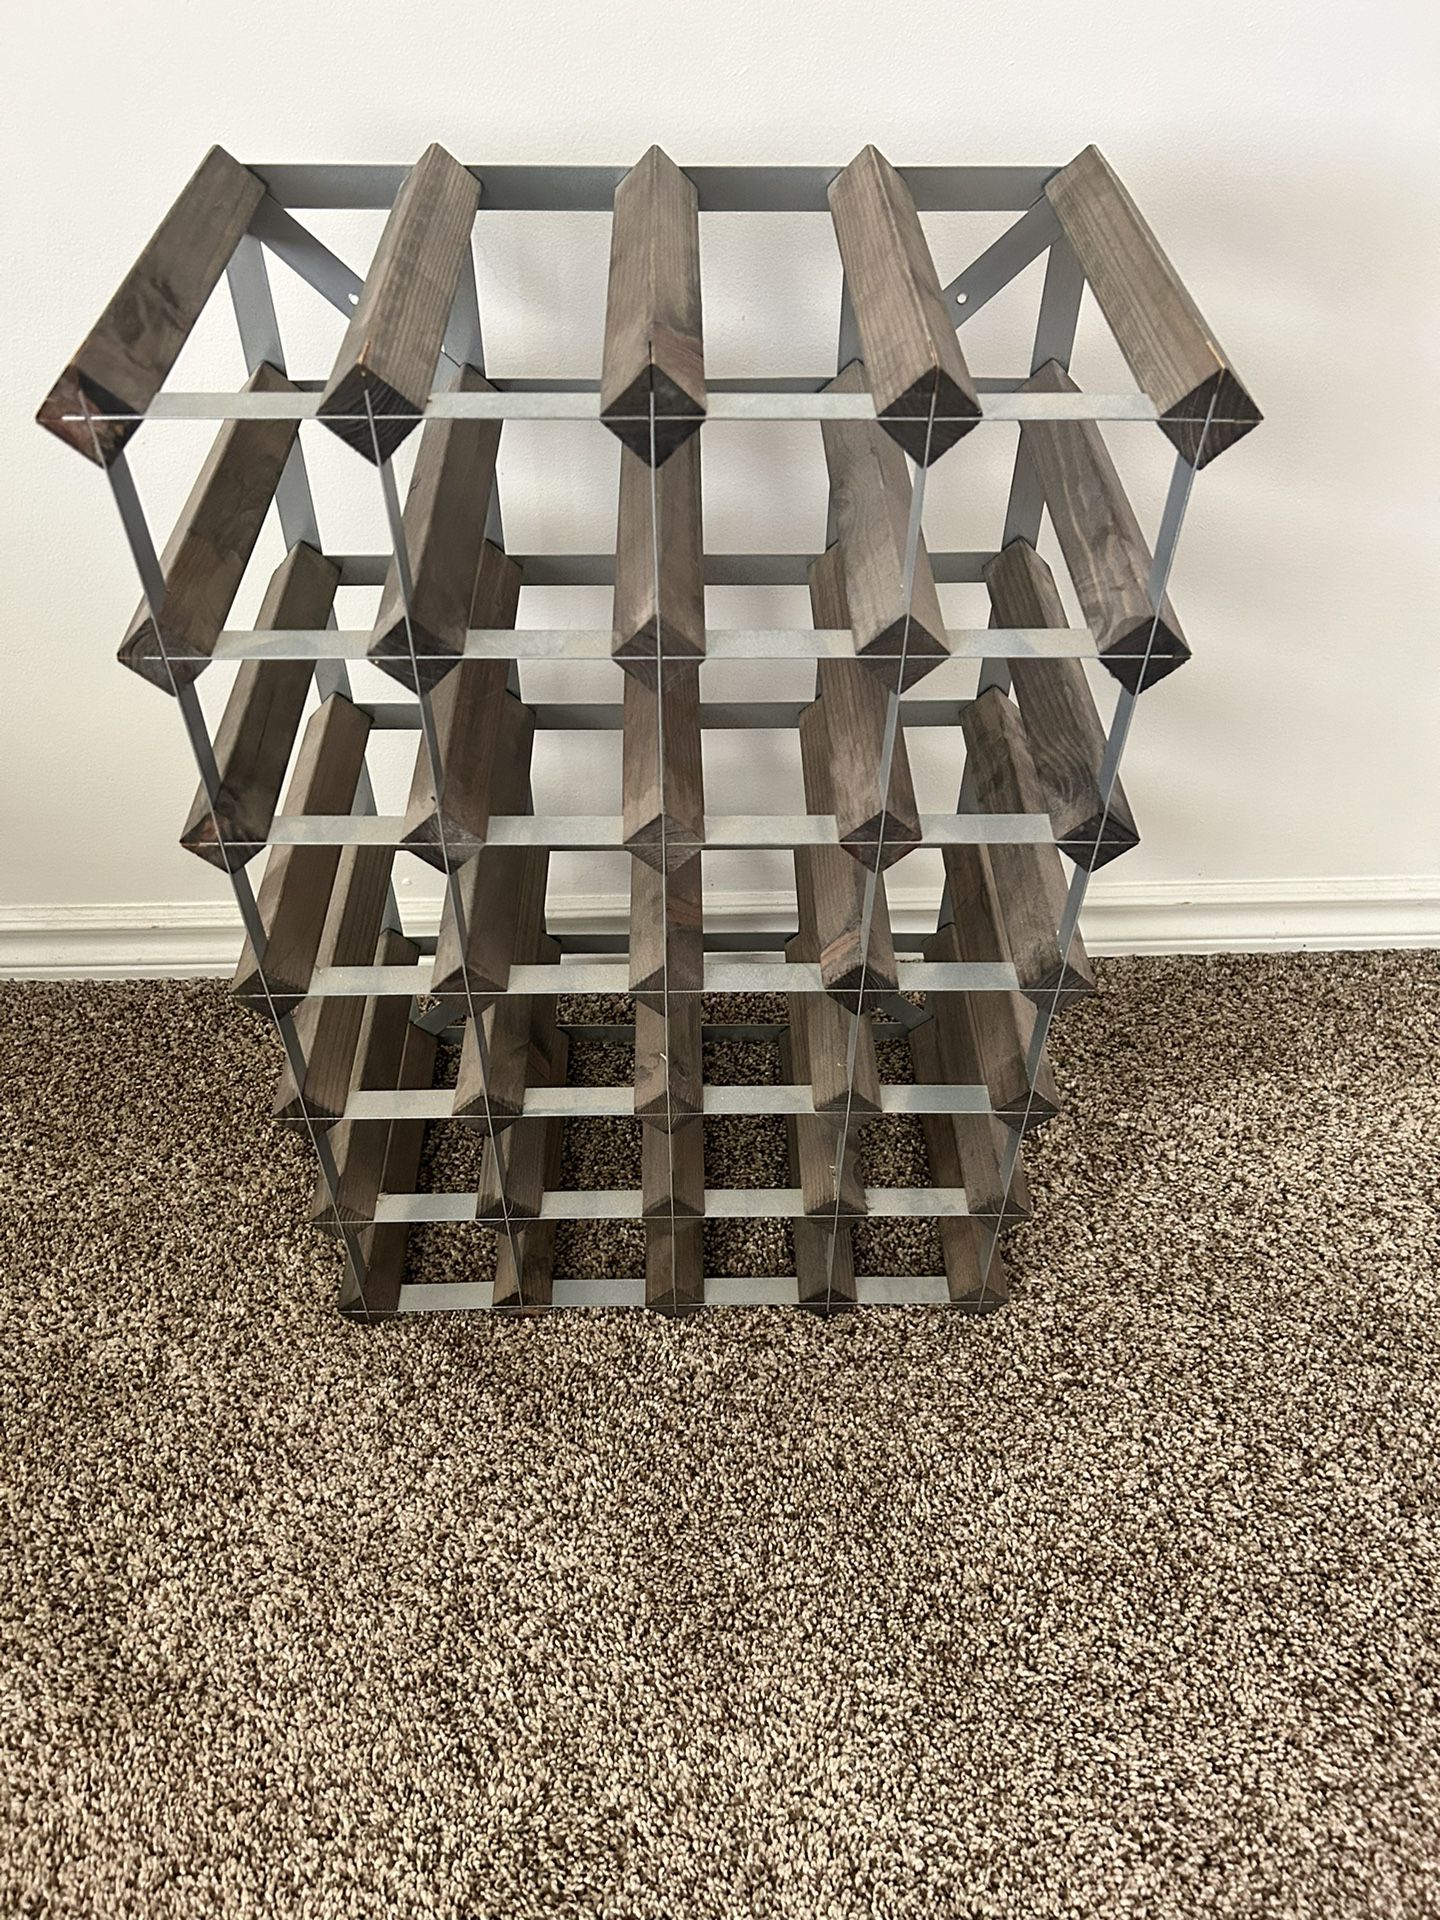 Wine Rack (steel/wood)